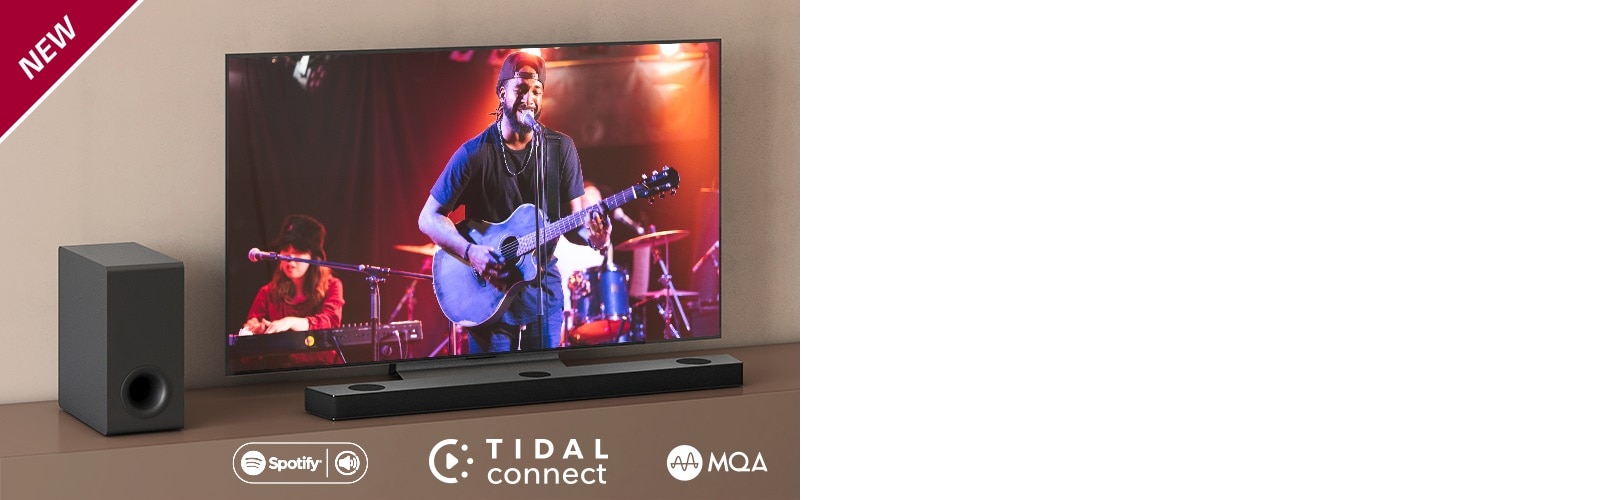 Ein LG TV steht auf dem braunen Regal, eine LG Sound Bar S95QR ist davor platziert. Ein Subwoofer steht links vom Fernseher. Auf dem Bildschirm läuft ein Konzert. In der linken oberen Ecke steht „NEU“.